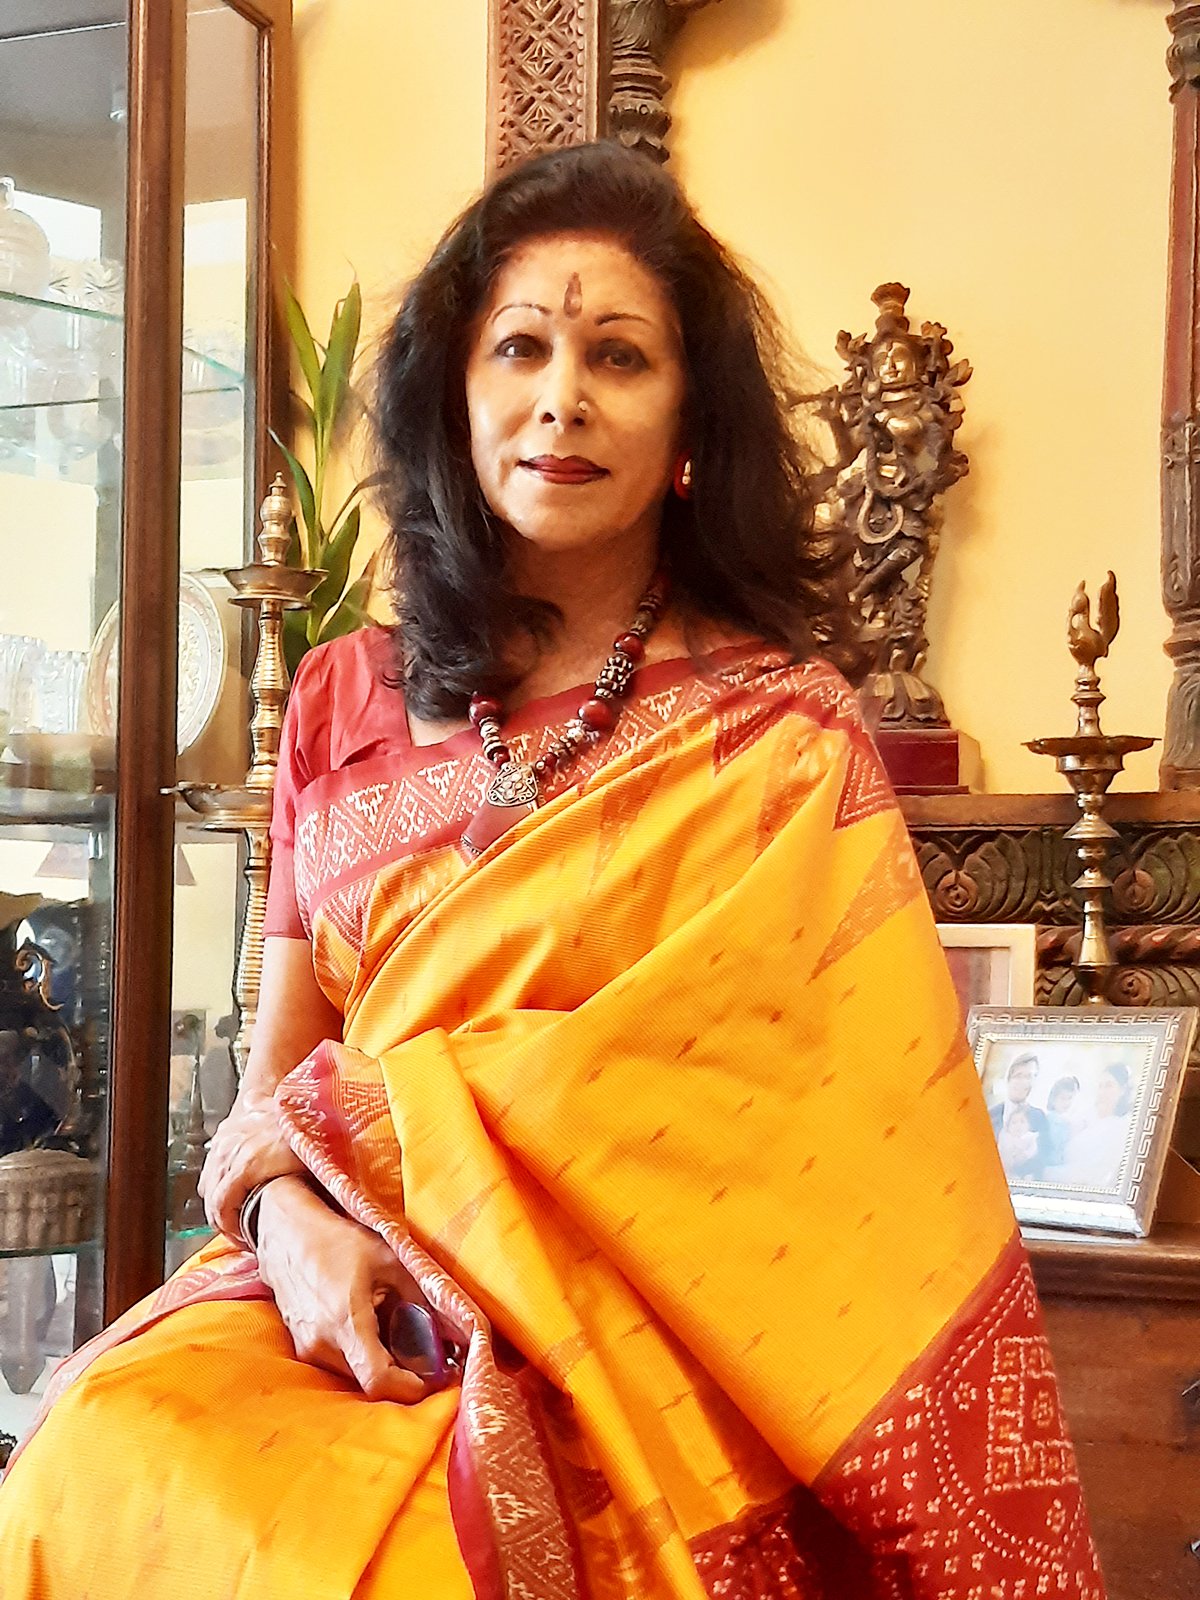 Shovana Narayan: Living Life at Several Levels